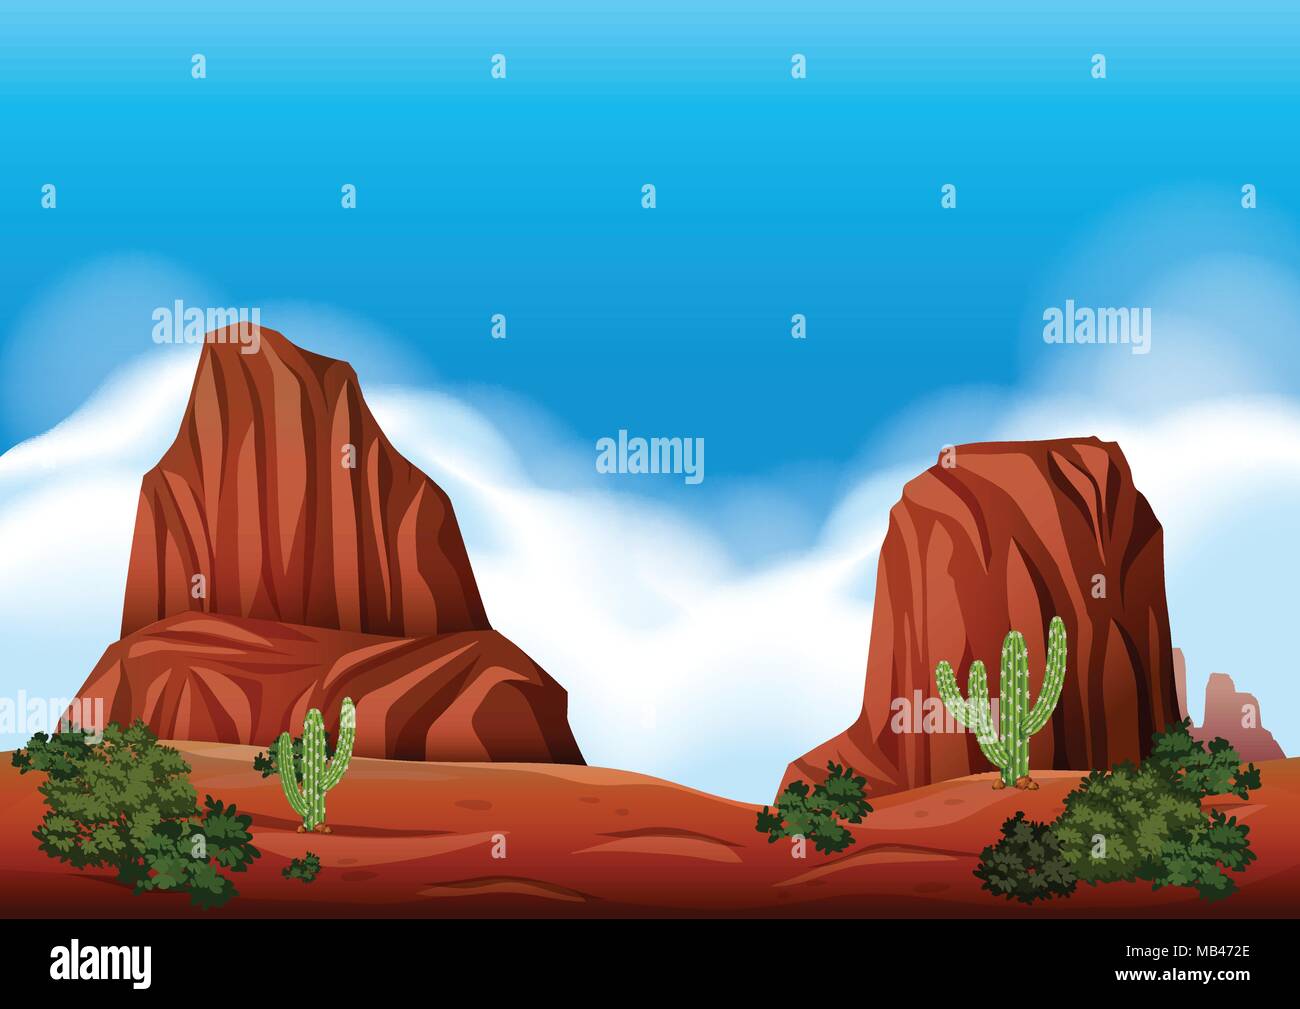 Desert Rock Scene in Nature illustration Stock Vector